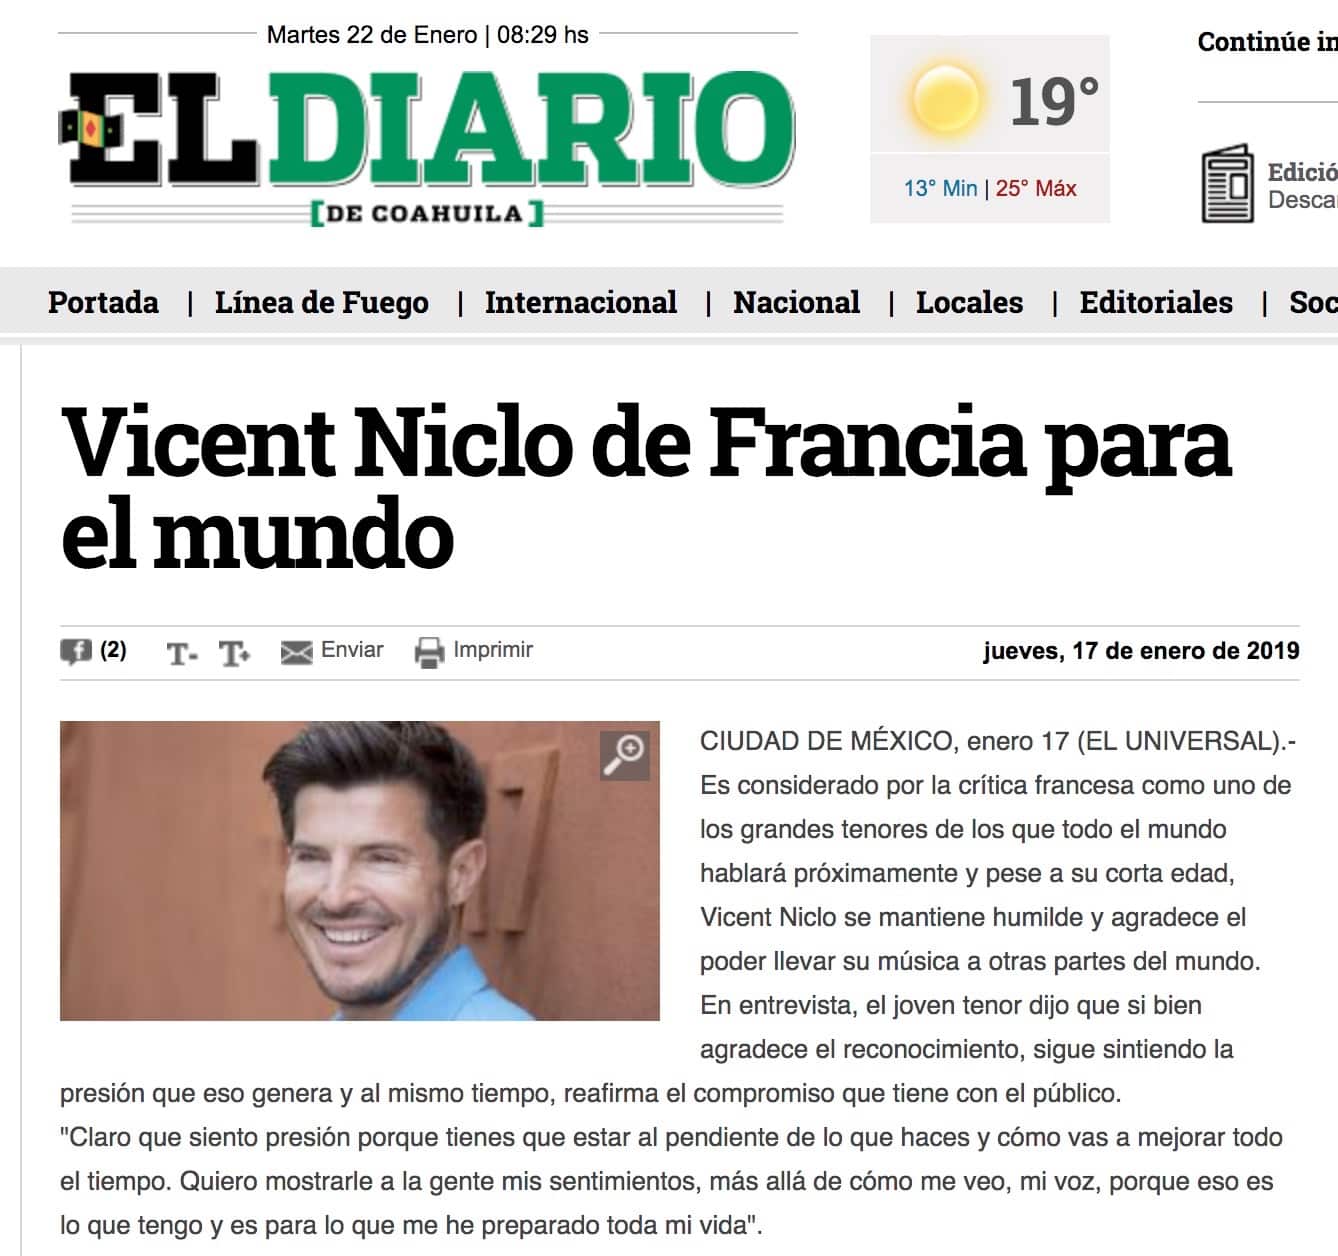 Vincent Niclo De Francia Para EL Mundo